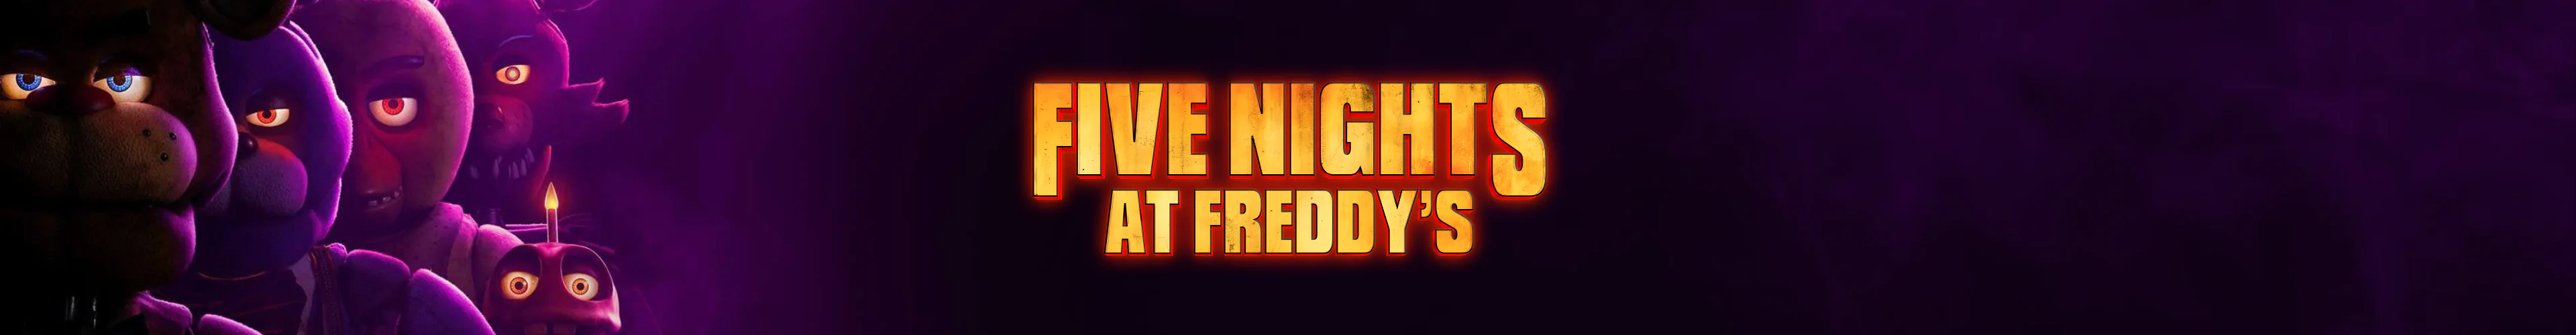 Five Nights at Freddy's plüsche banner